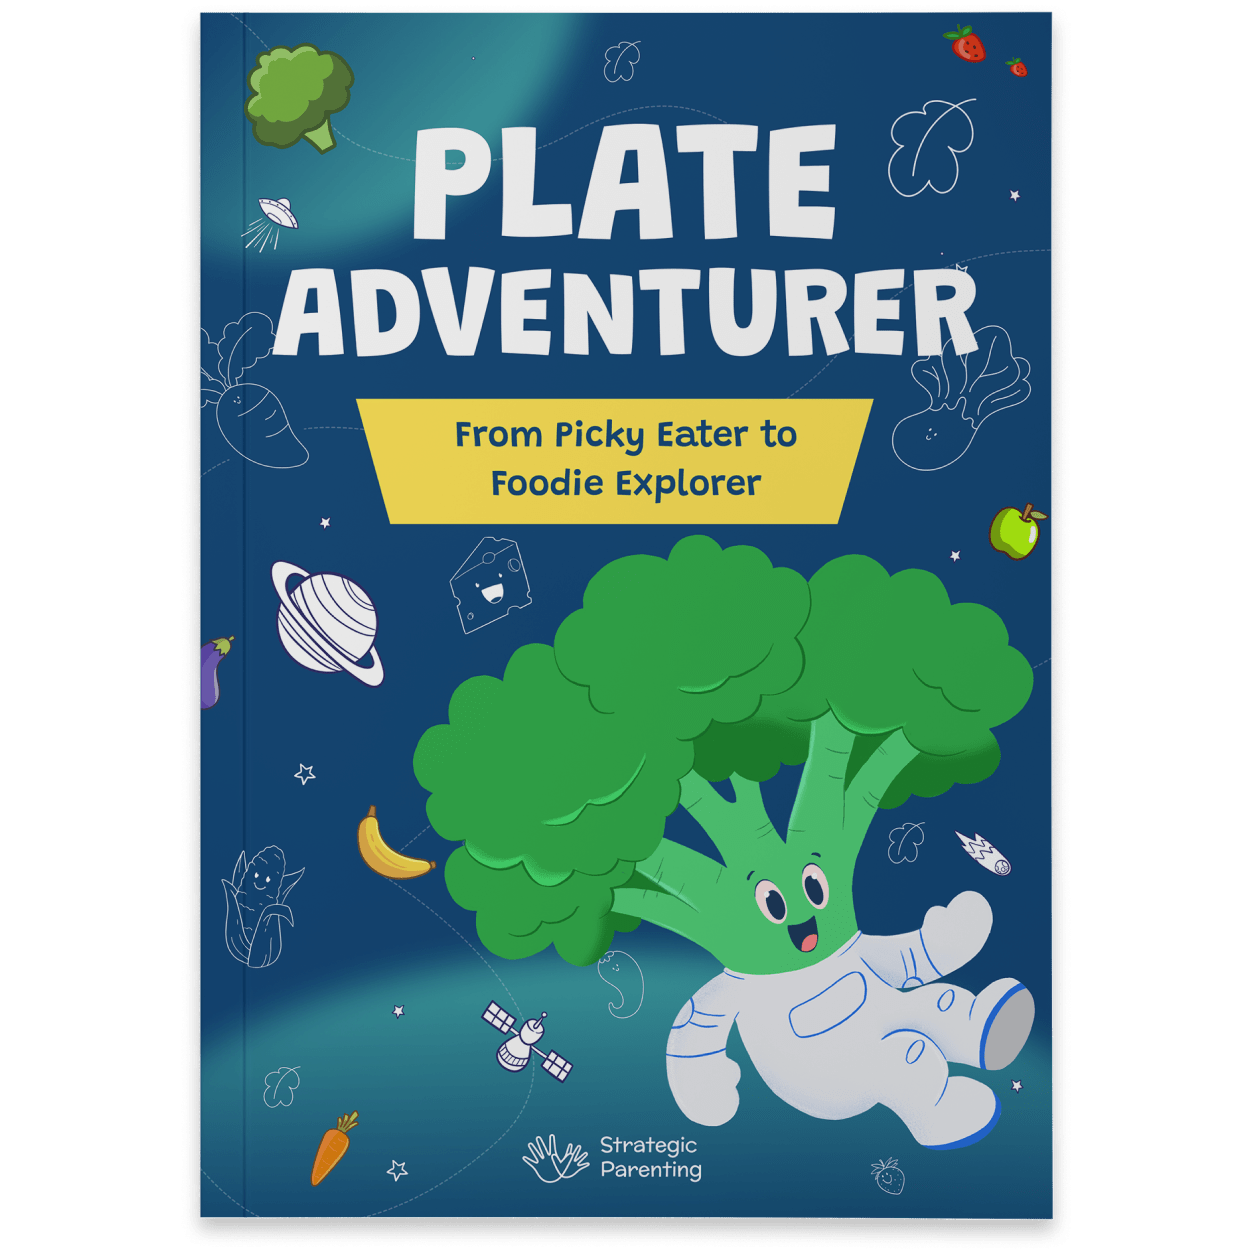 plate adventurer book mockup